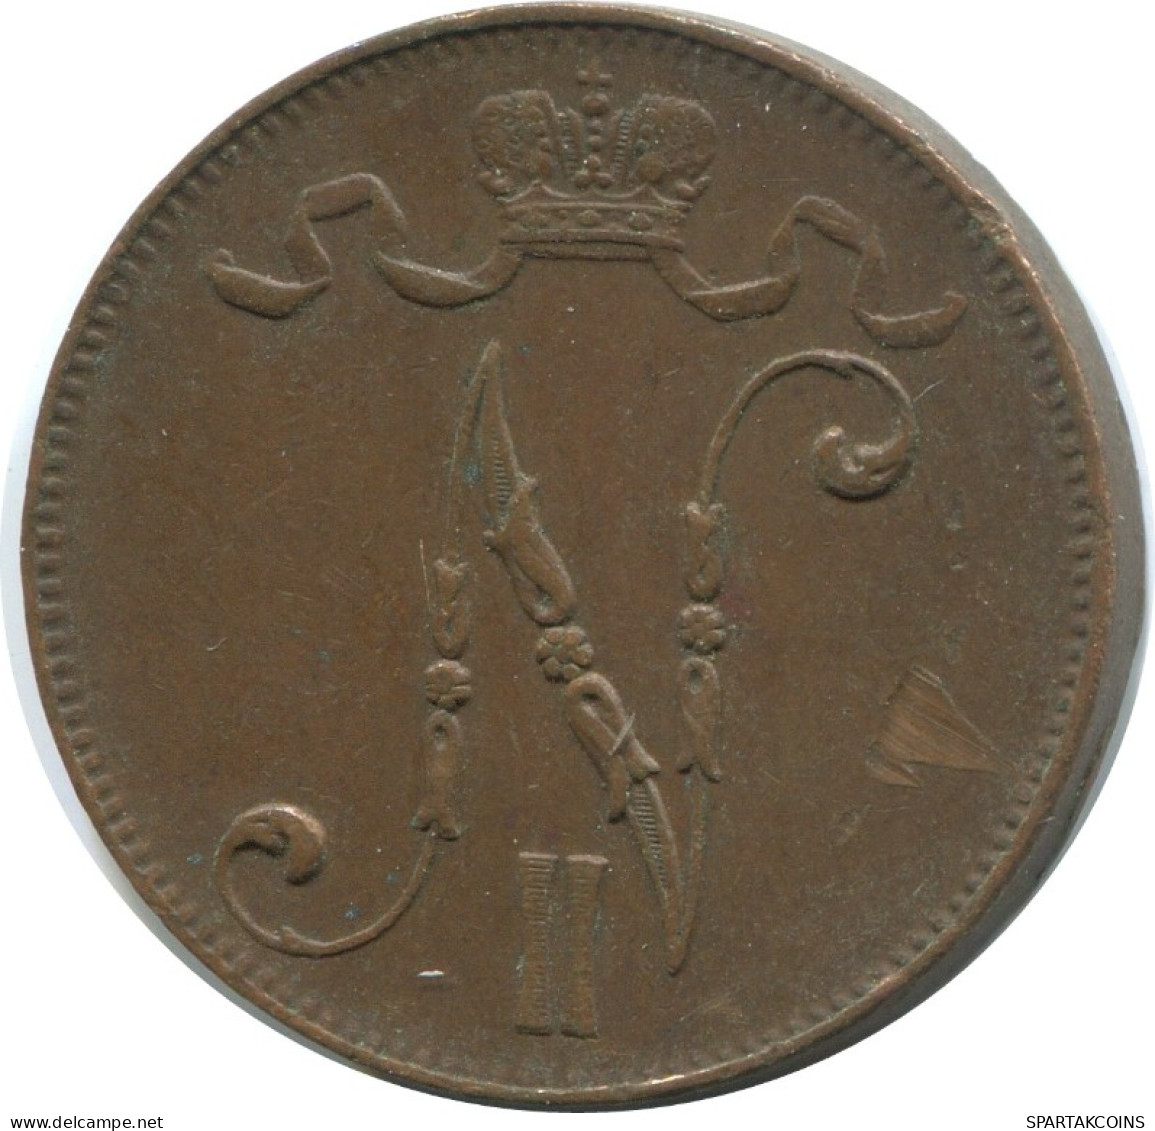 5 PENNIA 1916 FINLAND Coin RUSSIA EMPIRE #AB261.5.U.A - Finlandia